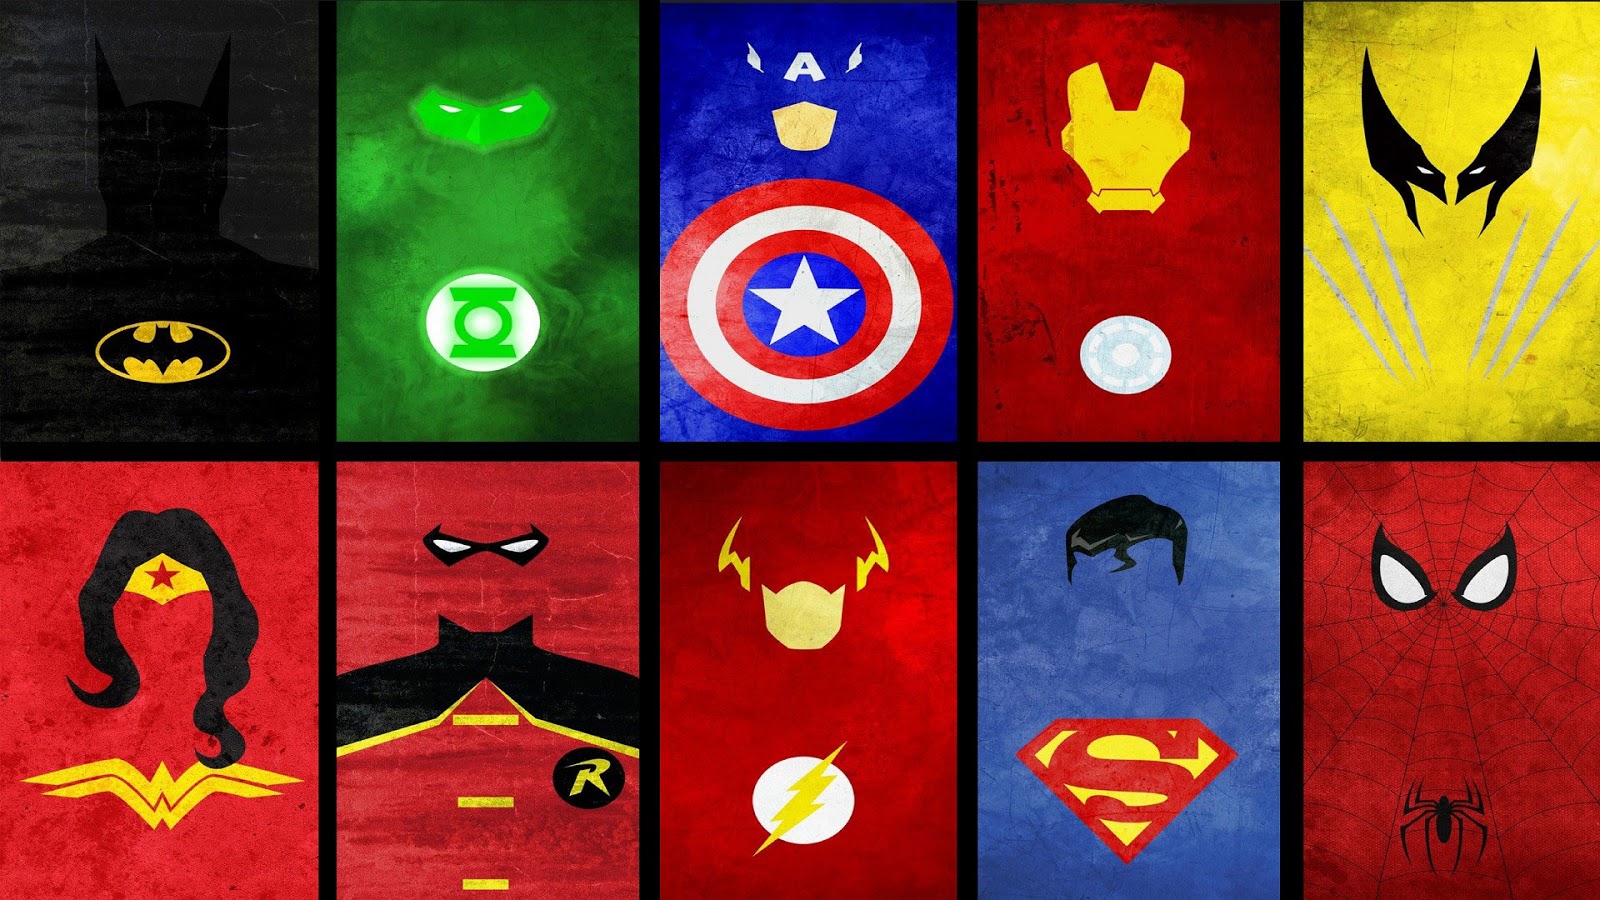 75+] Free Superhero Wallpaper - WallpaperSafari